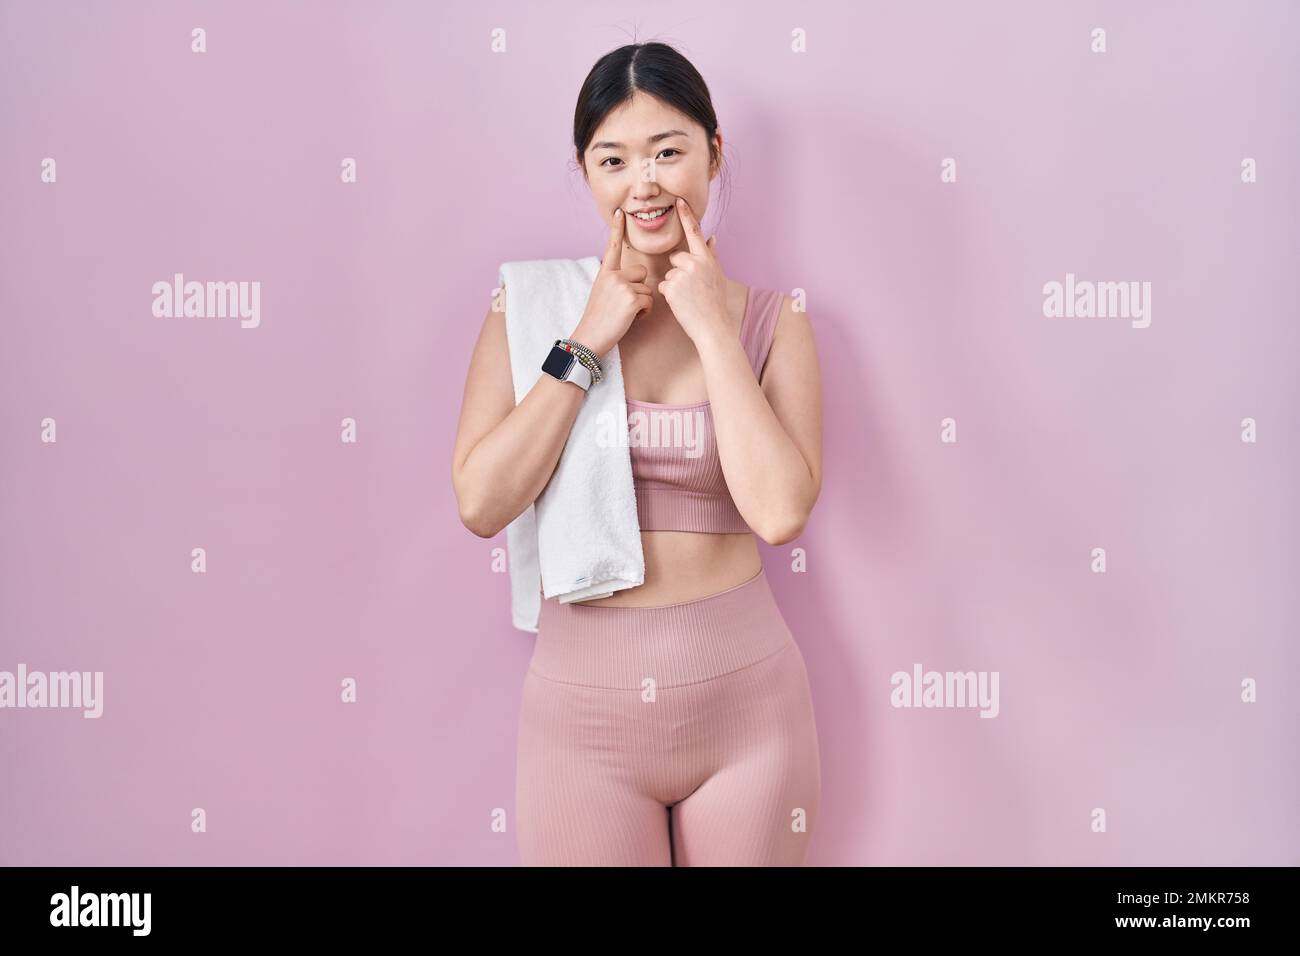 Mujer joven china con ropa deportiva y sonriendo con la boca abierta, los dedos apuntando y forzando una sonrisa Fotografía de stock -